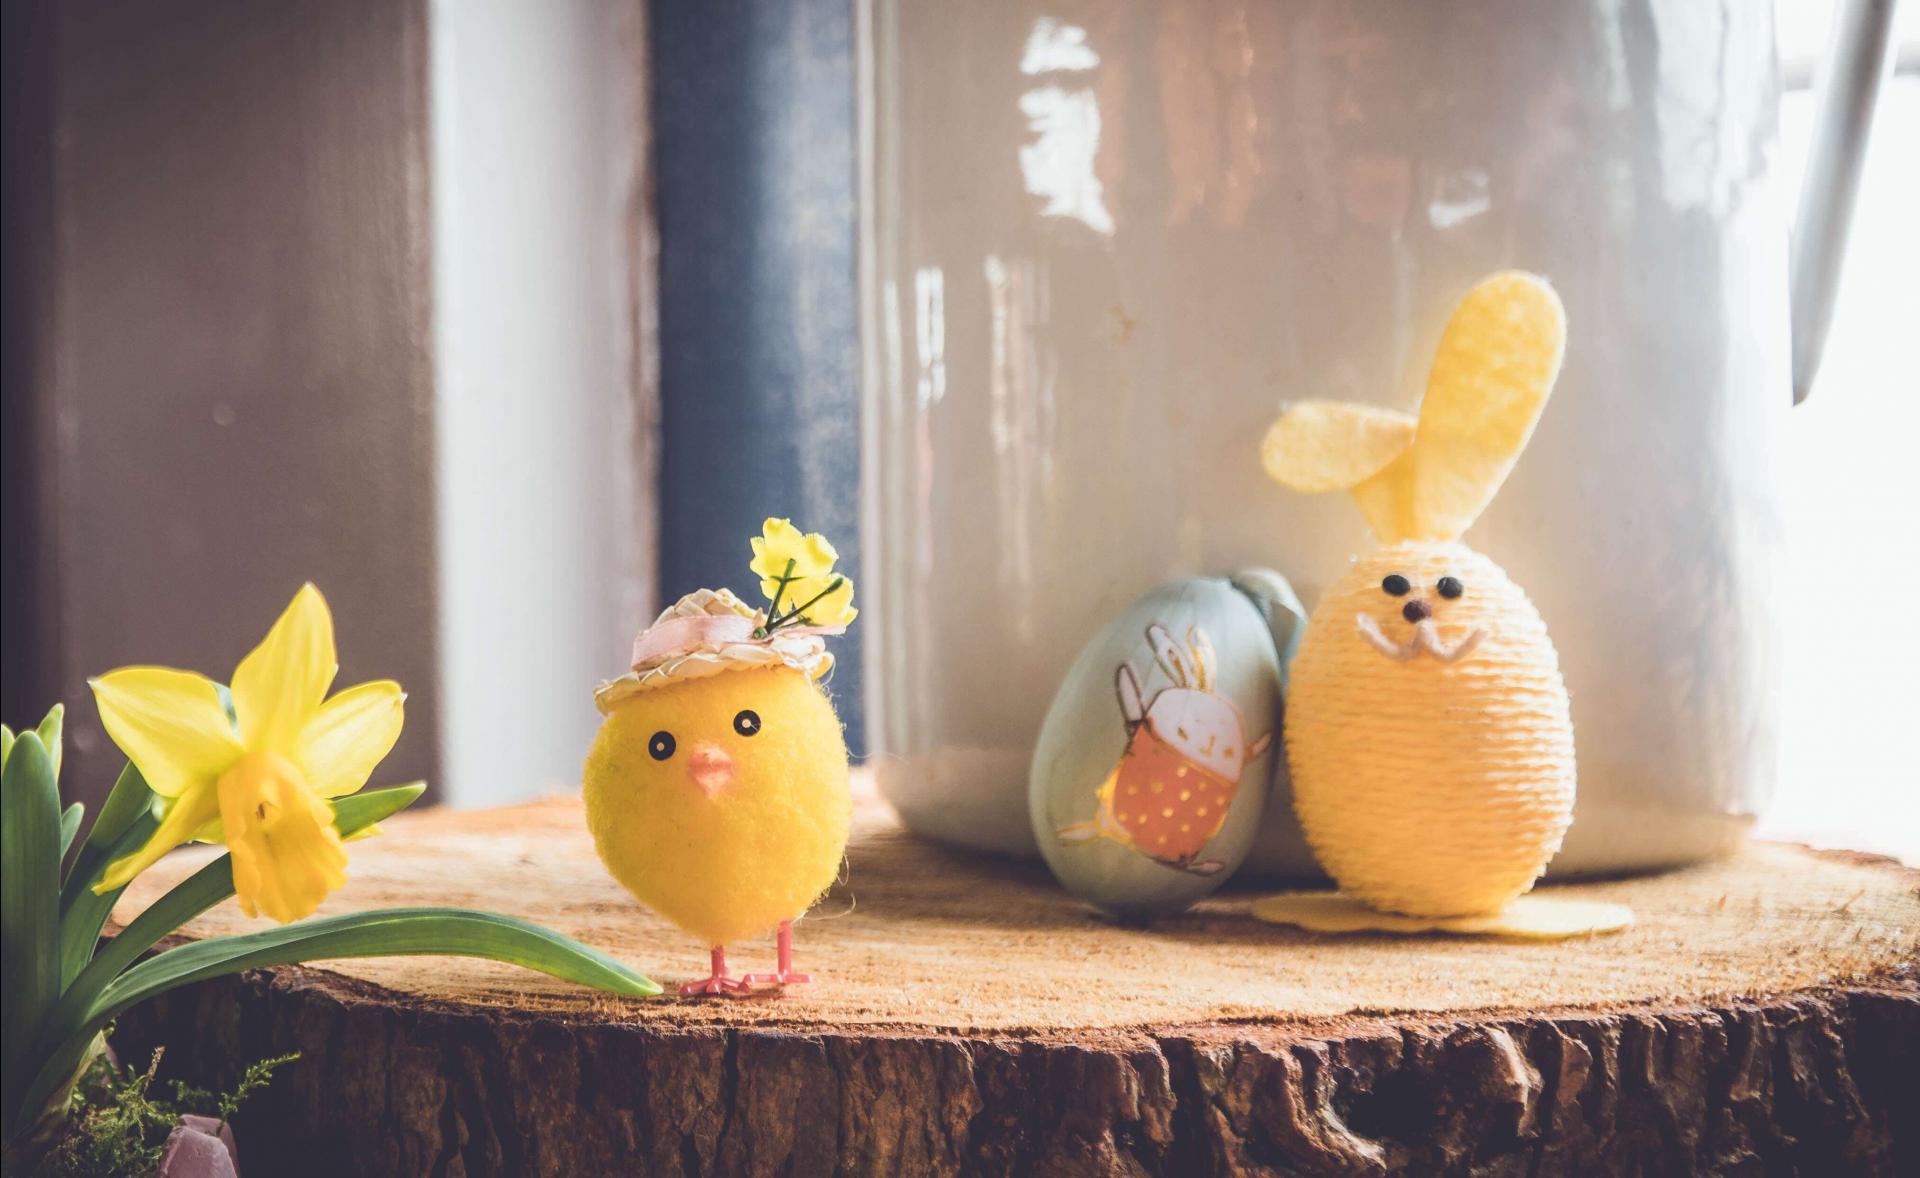 Cum alegi decorațiuni de Paște pentru o masă festivă? 8 idei speciale